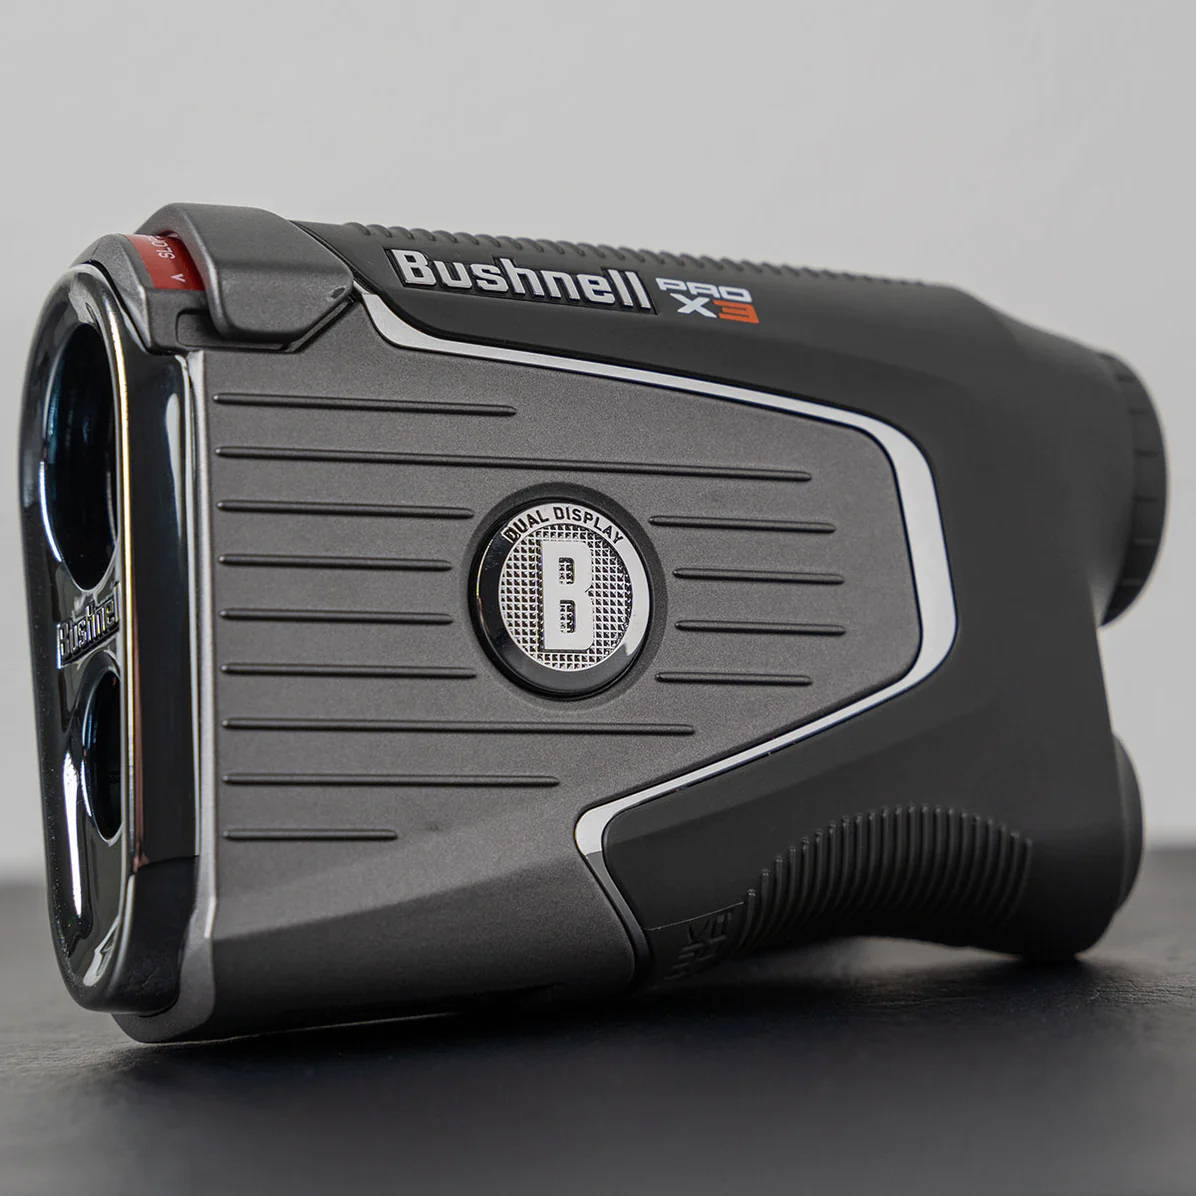 Bushnell Pro X3 golf laser rangefinder with advanced slope